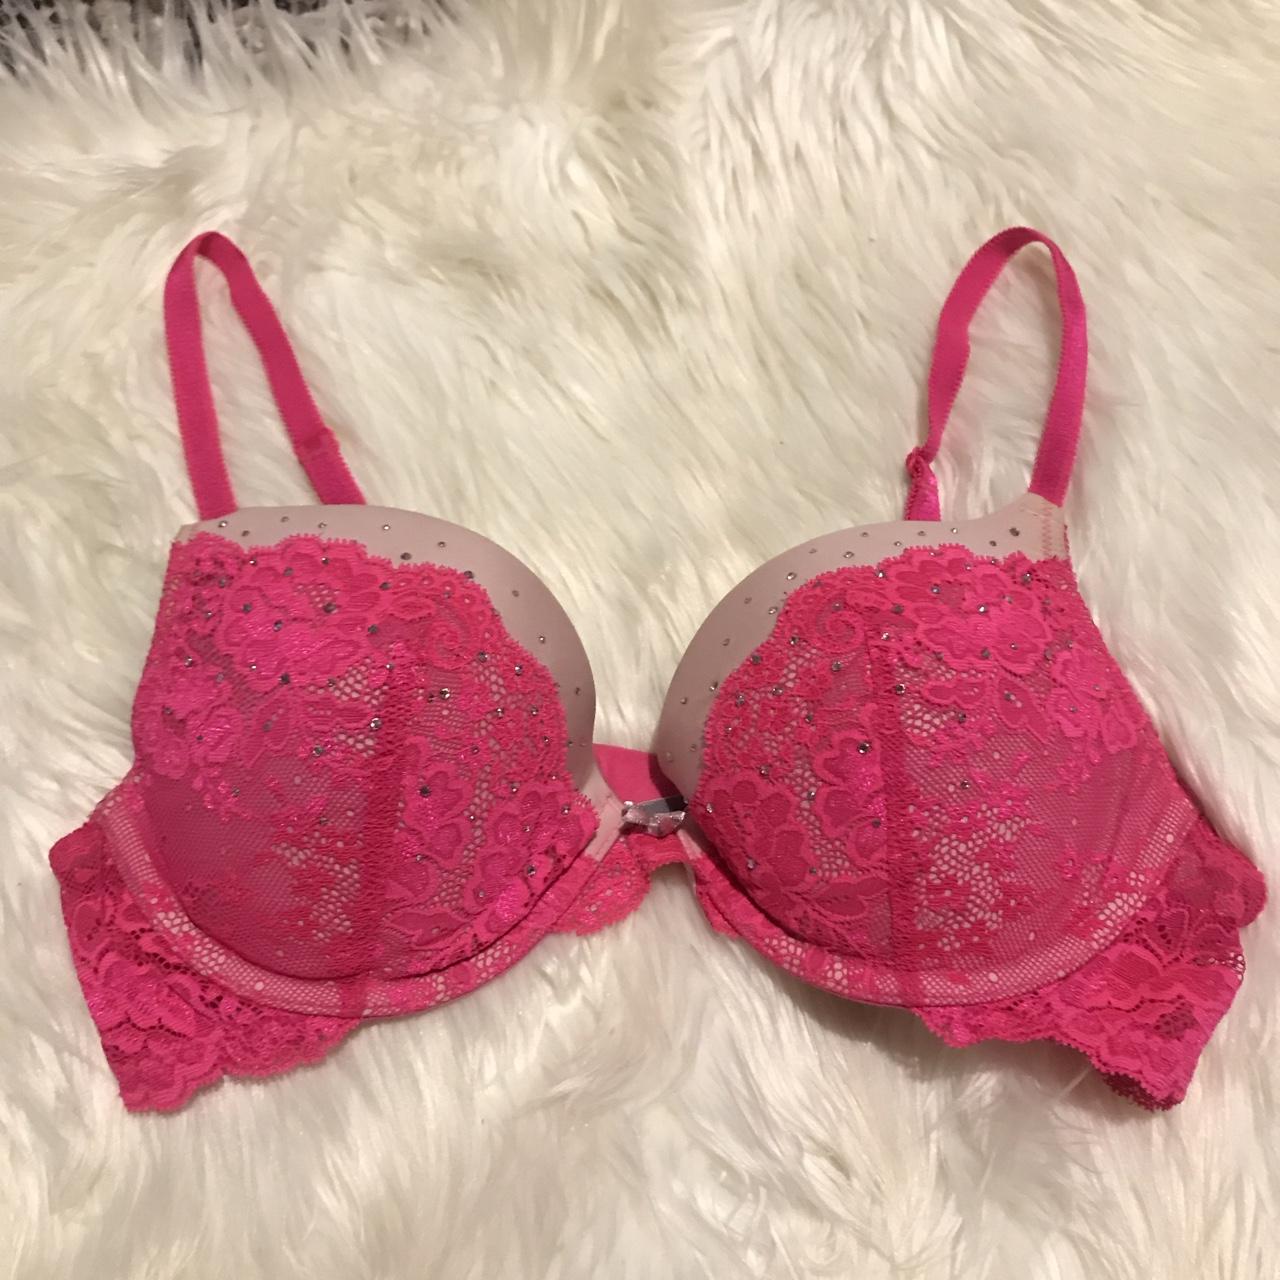 Victoria's Secret lace up bralette pink 🍒 So amazing - Depop